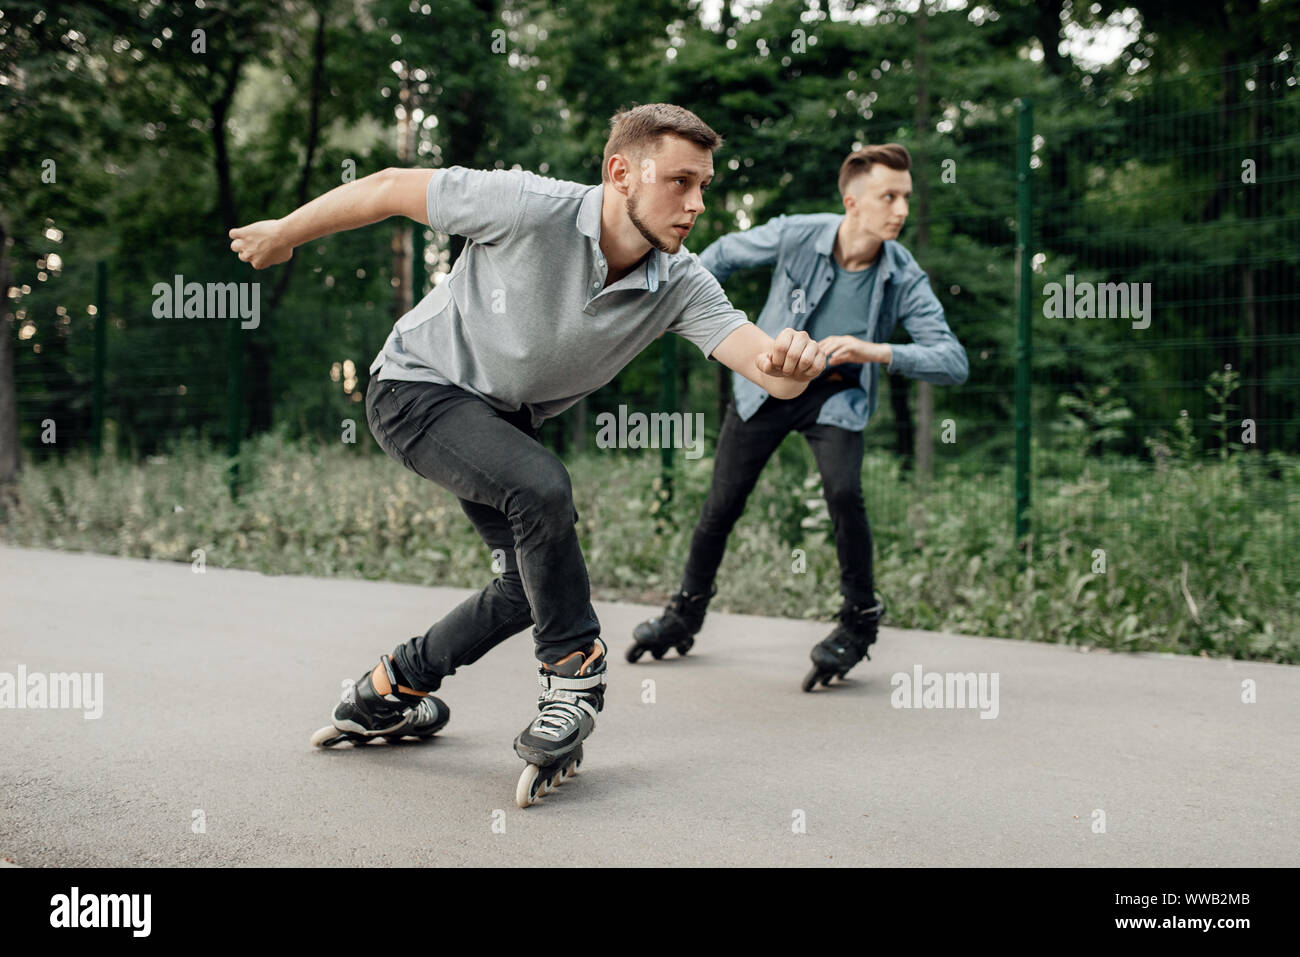 Le roller, deux patineurs hommes course de vitesse commence Photo Stock -  Alamy